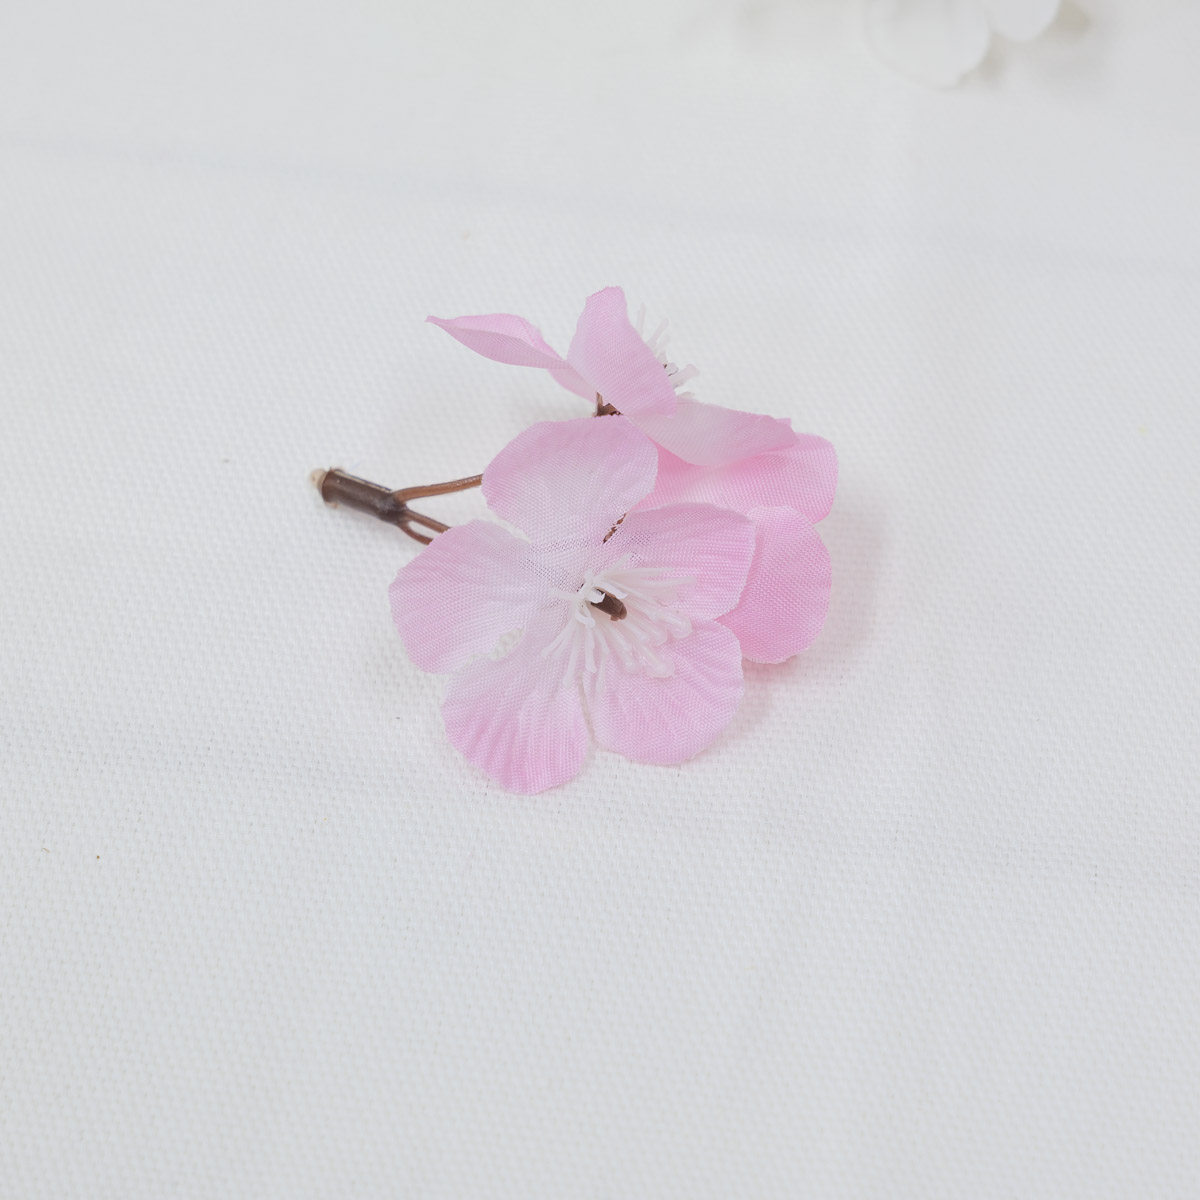 조화 봄 벚꽃잎 꽃송이 300개 1봉지 핑크 꽃잎디테일